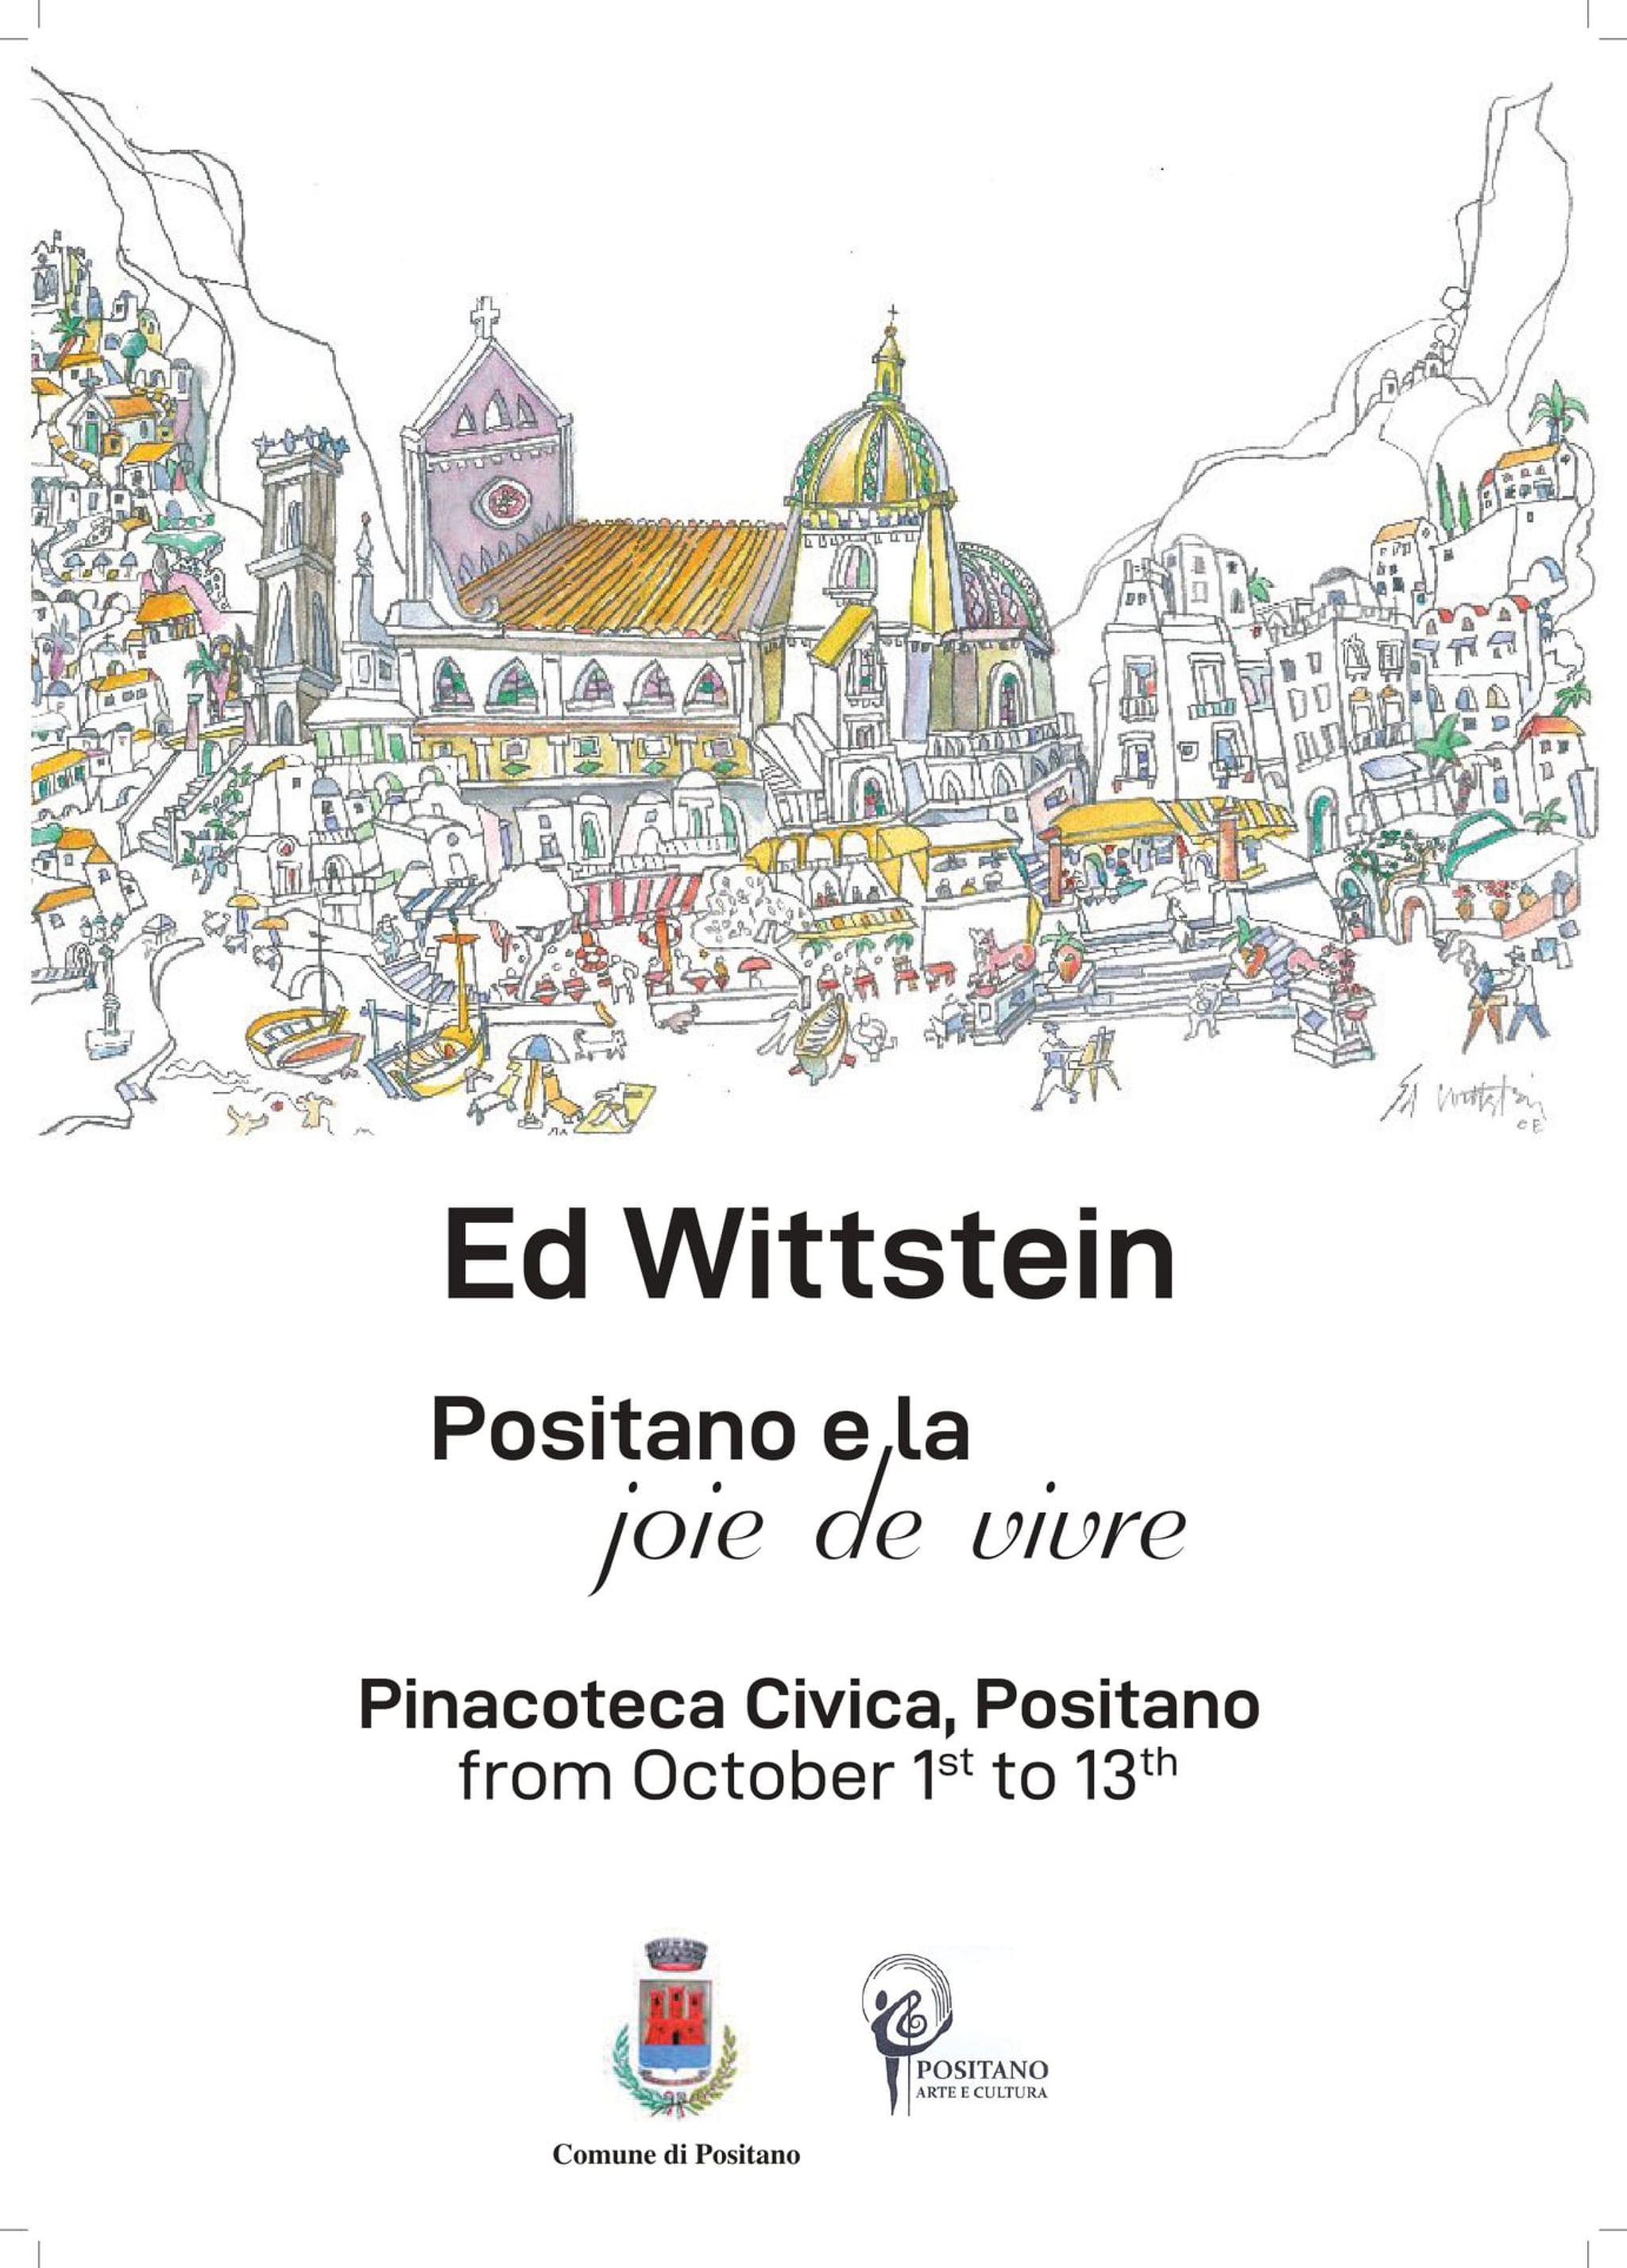  “Ed Wittstein, Positano e la joie de vivre”